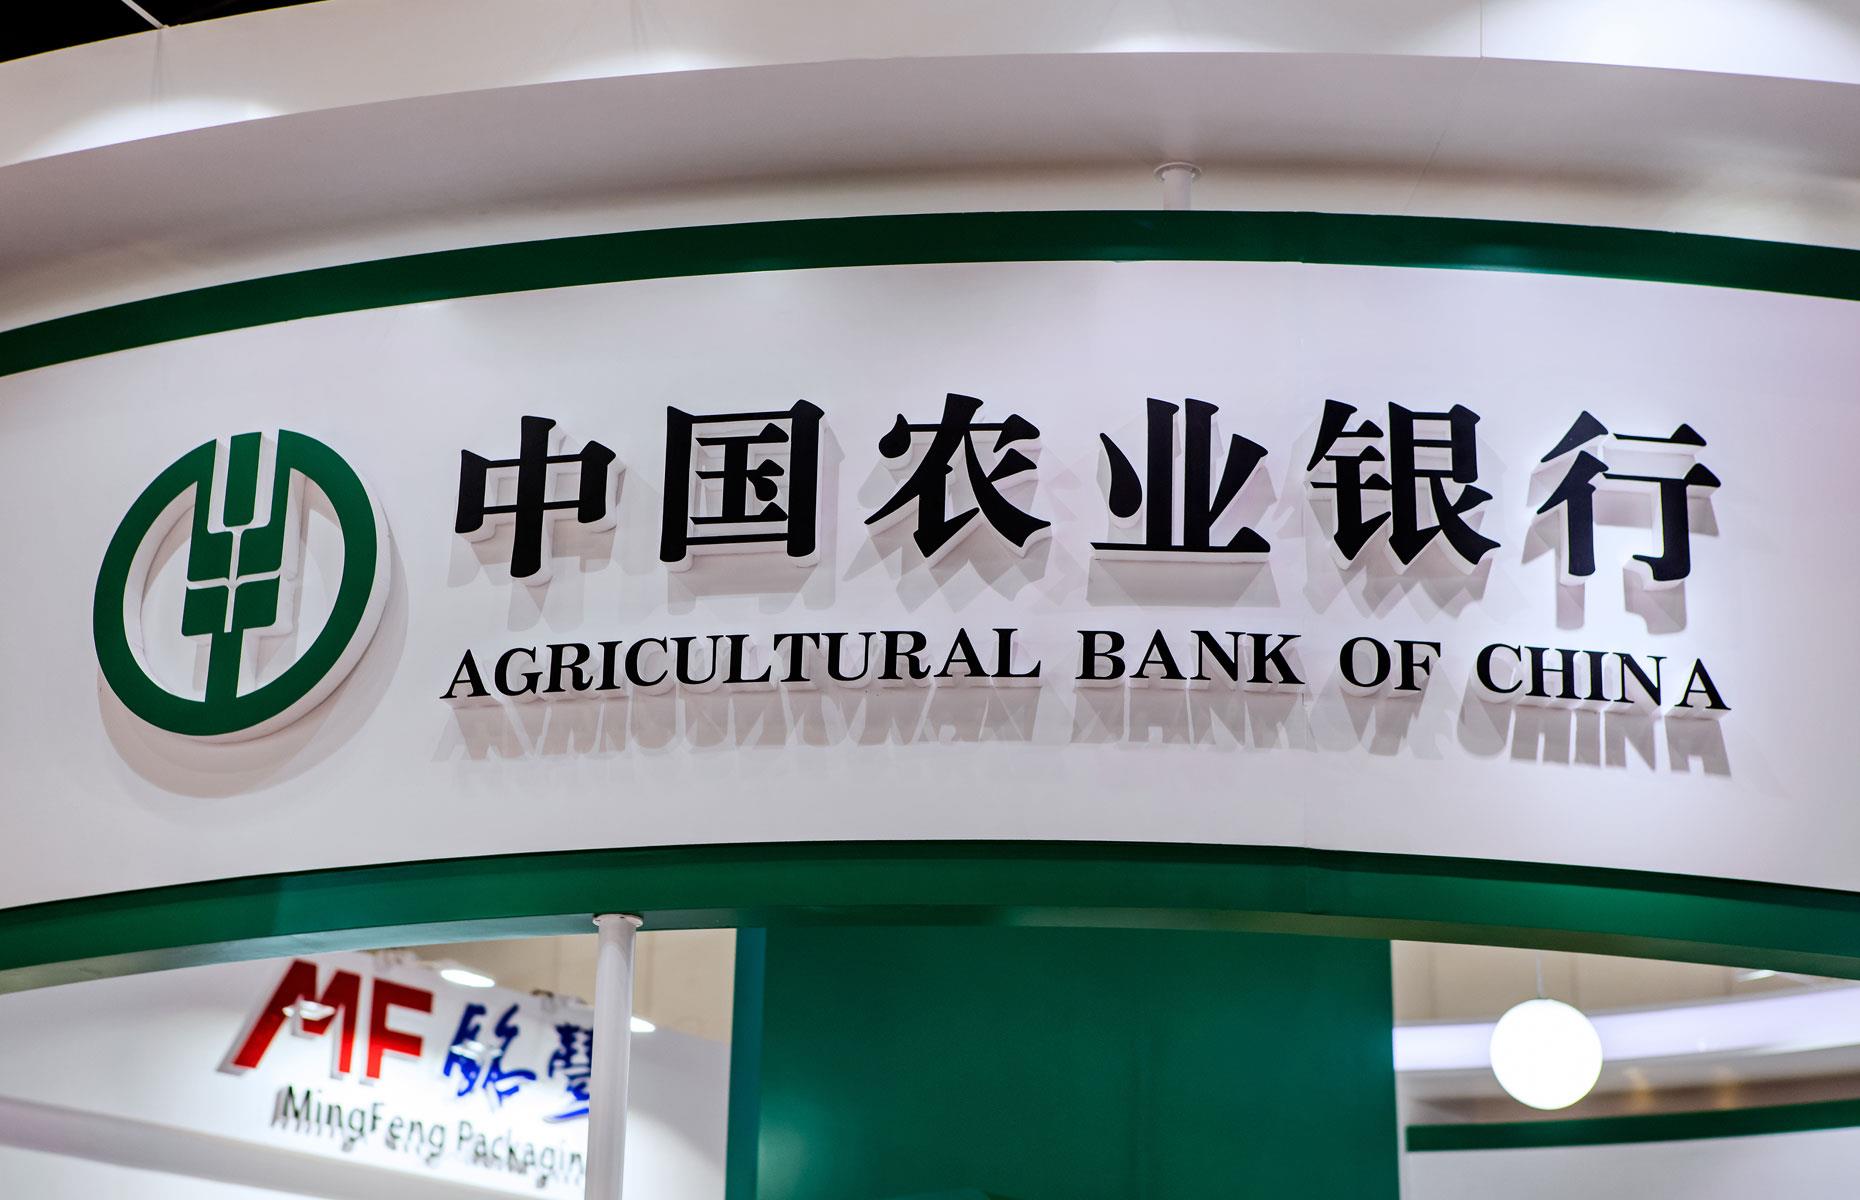 Abc bank. Китайский сельскохозяйственный банк(Agricultural Bank of China). Агрокульурный бан Китая. ABC банк в Китае. Agricultural Bank of China логотип.